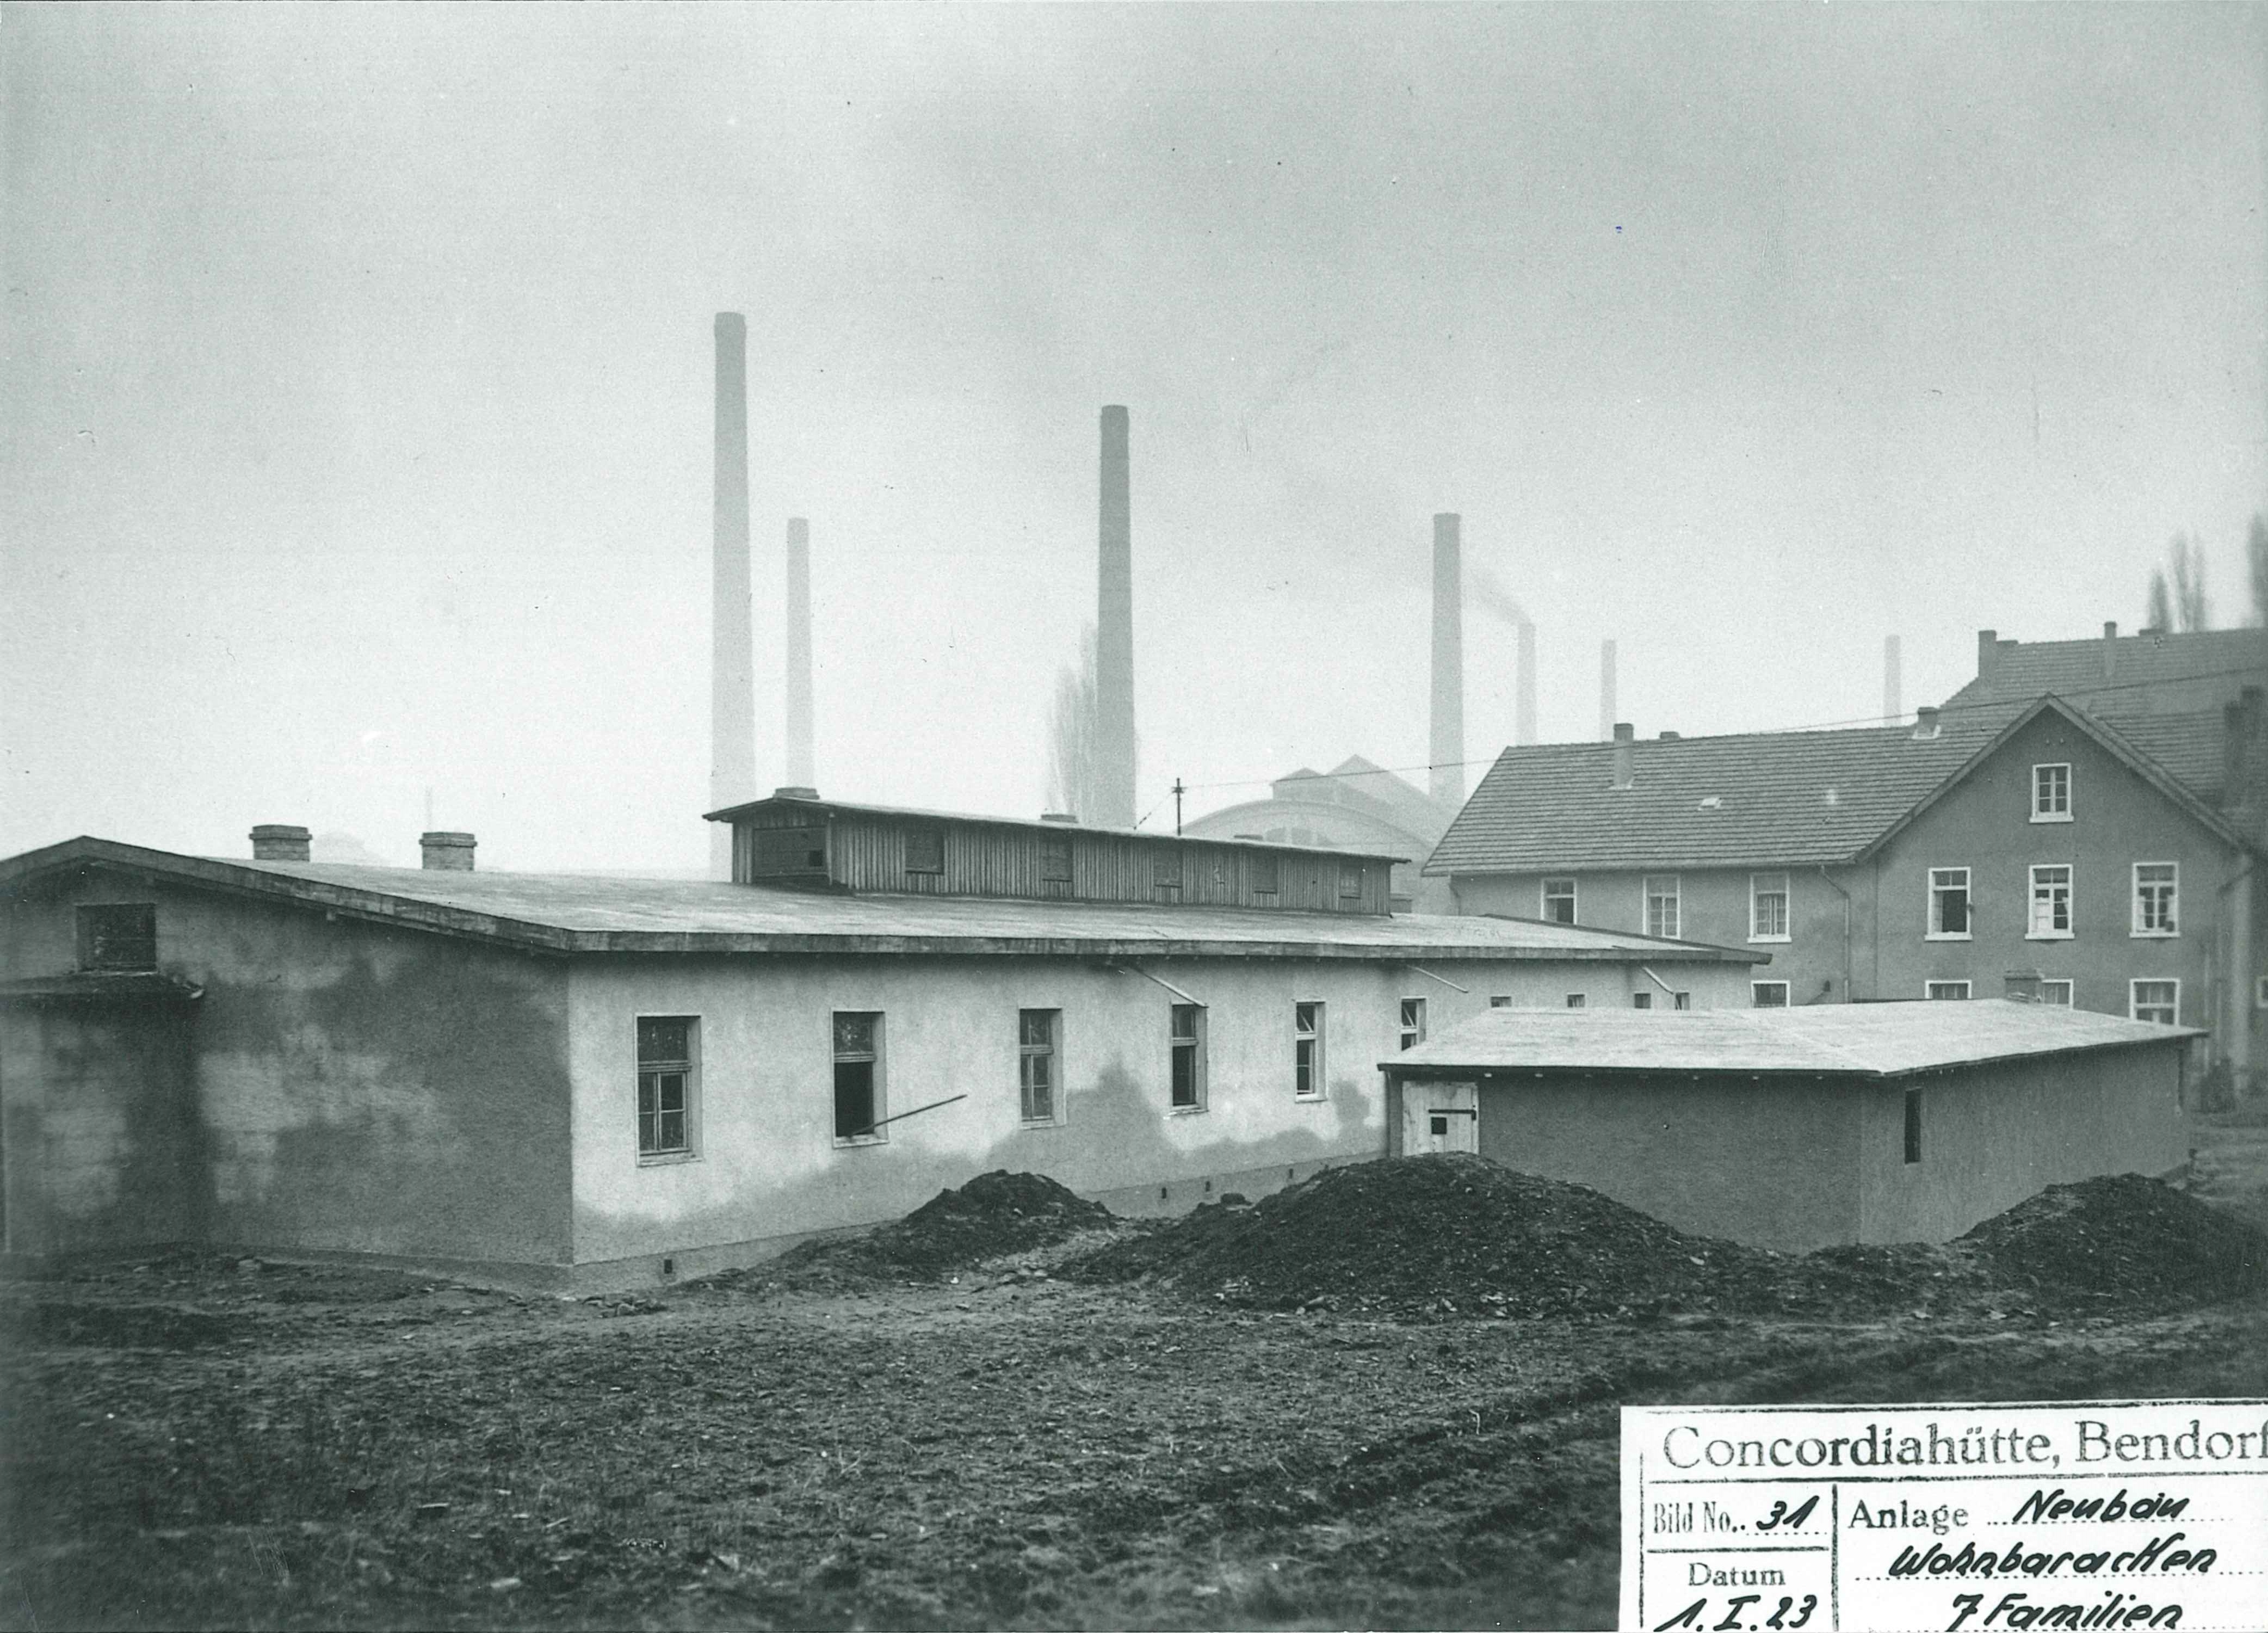 Neubau einer Wohnbaracke, Concordia-Hütte in Mülhofen, 1923 (Thyssen Konzernarchiv Duisburg CC BY-NC-SA)